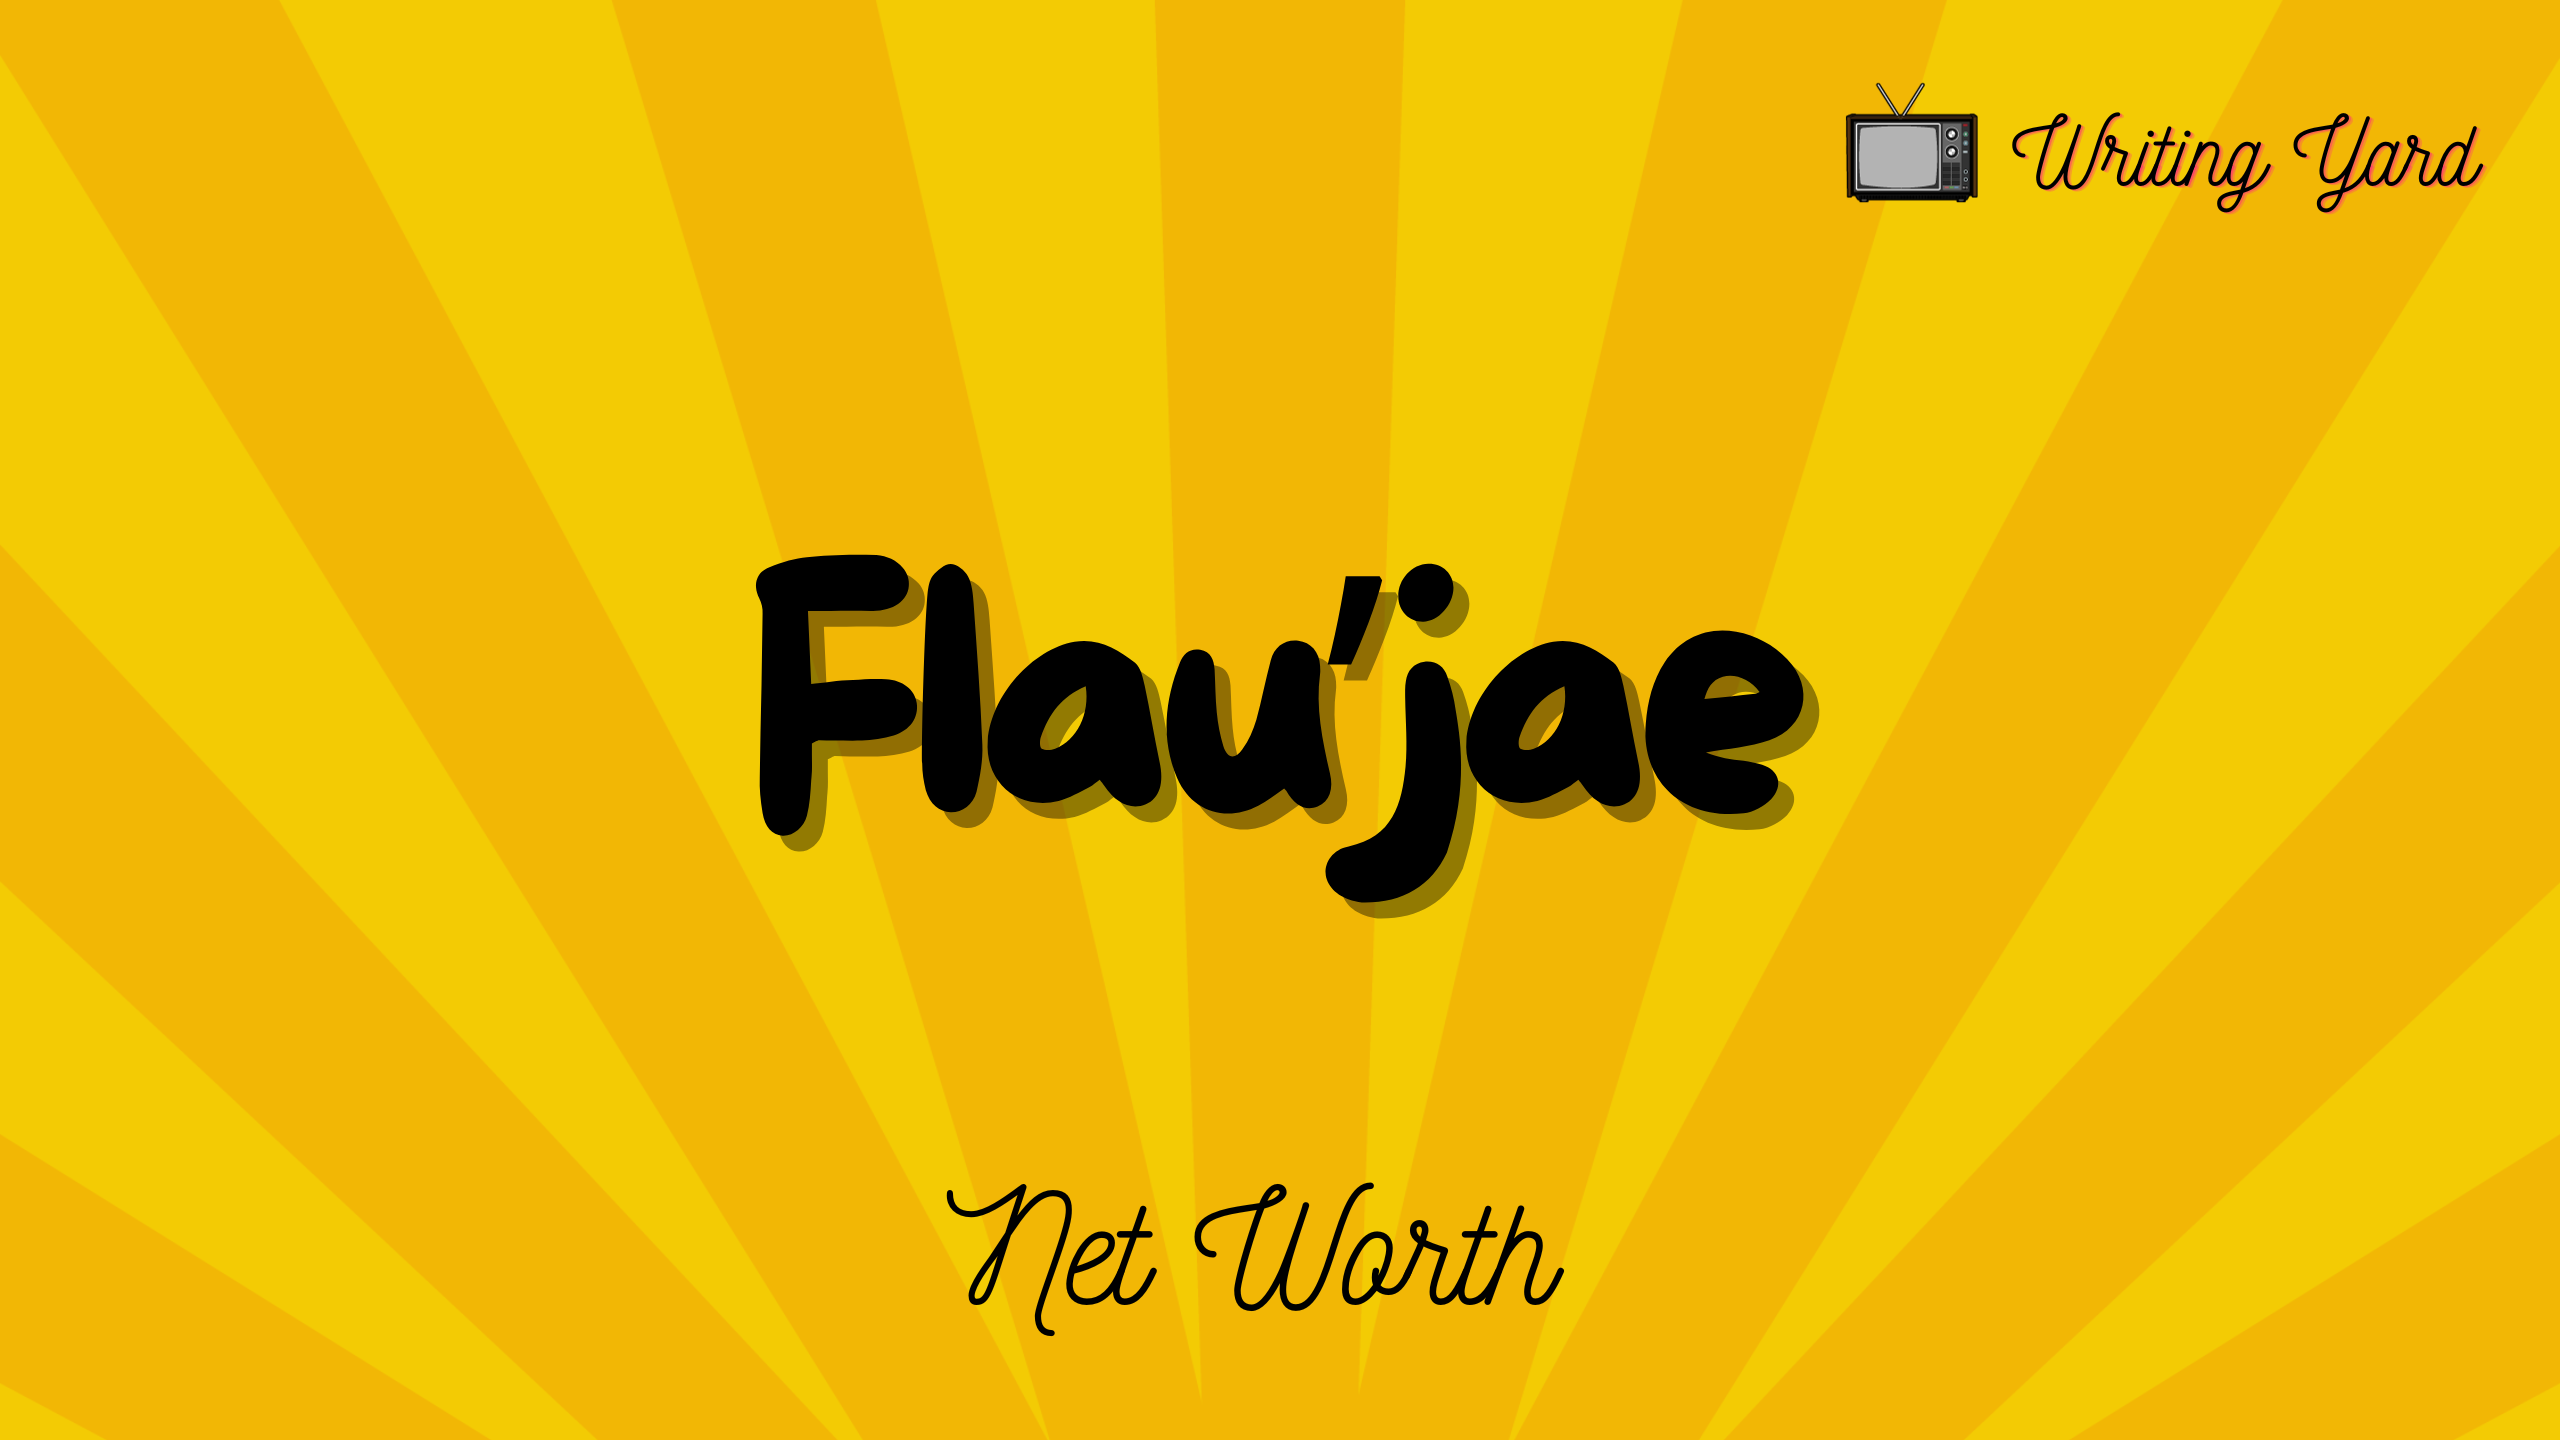 Flau’jae Net Worth